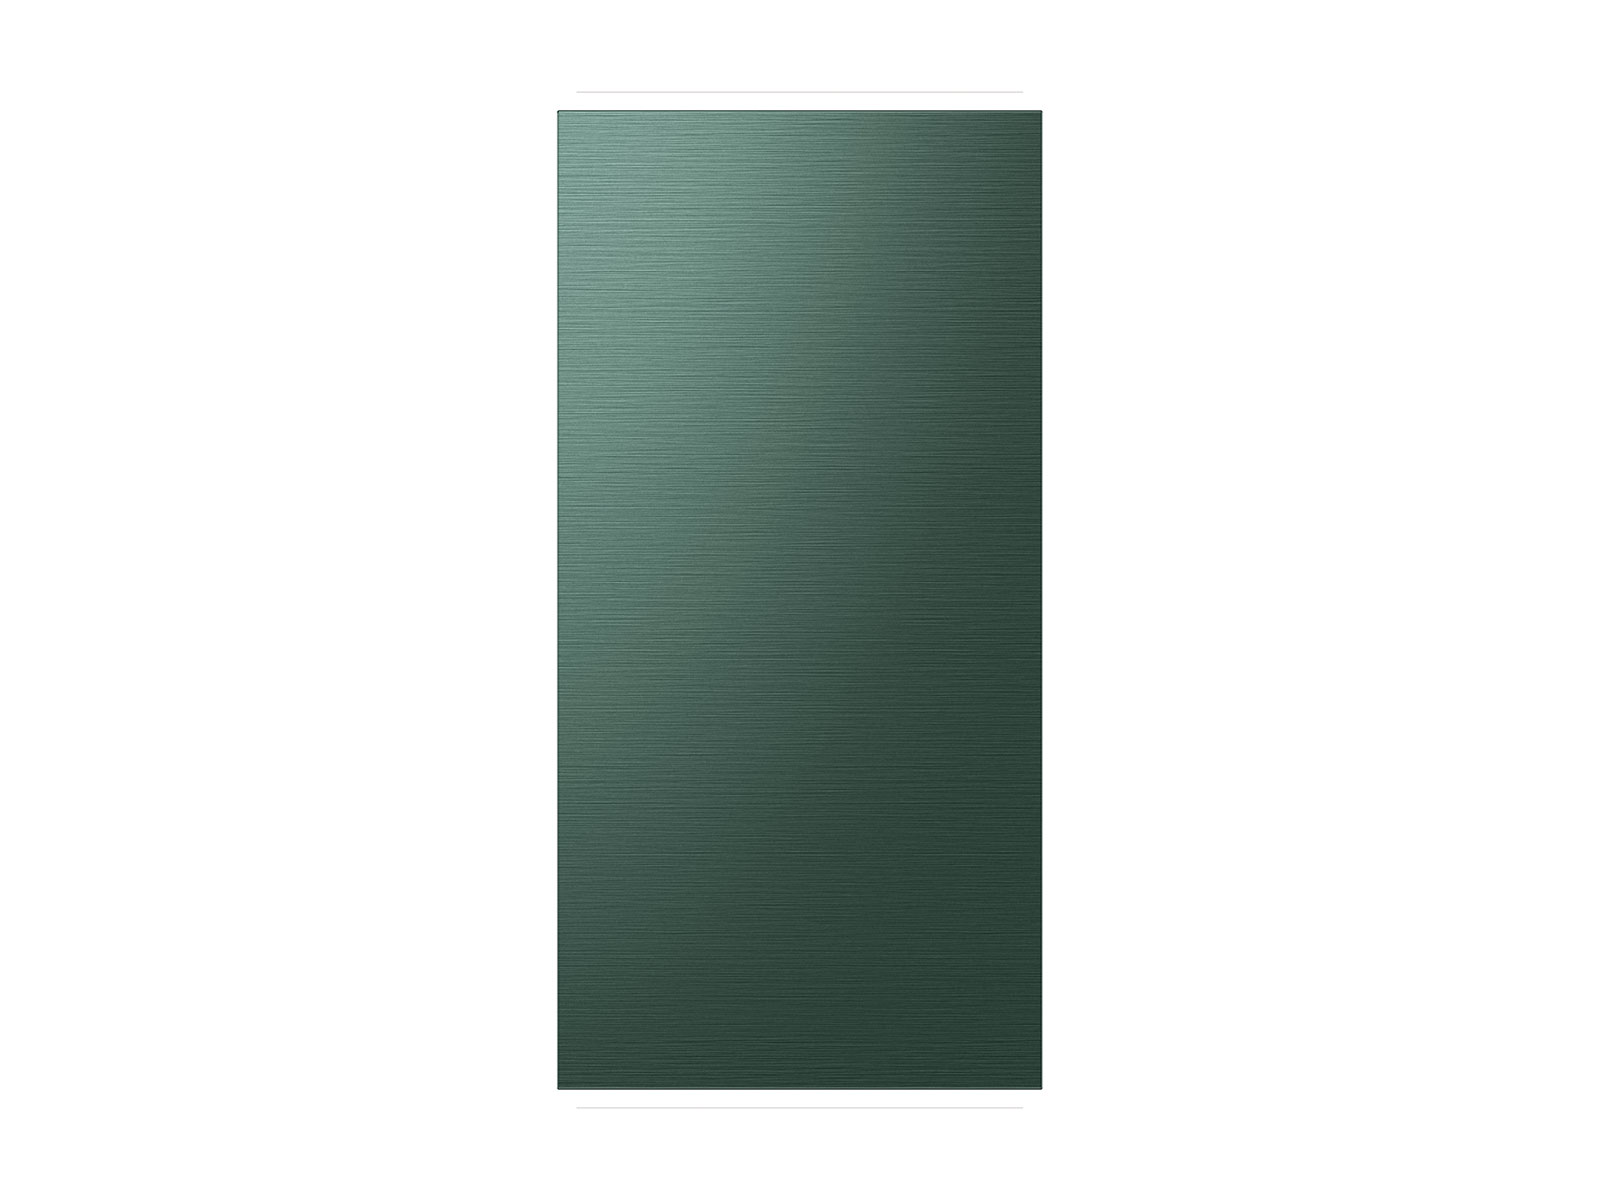 Photos - Fridge Samsung Bespoke 4-Door French Door Refrigerator Panel in Emerald in Green 